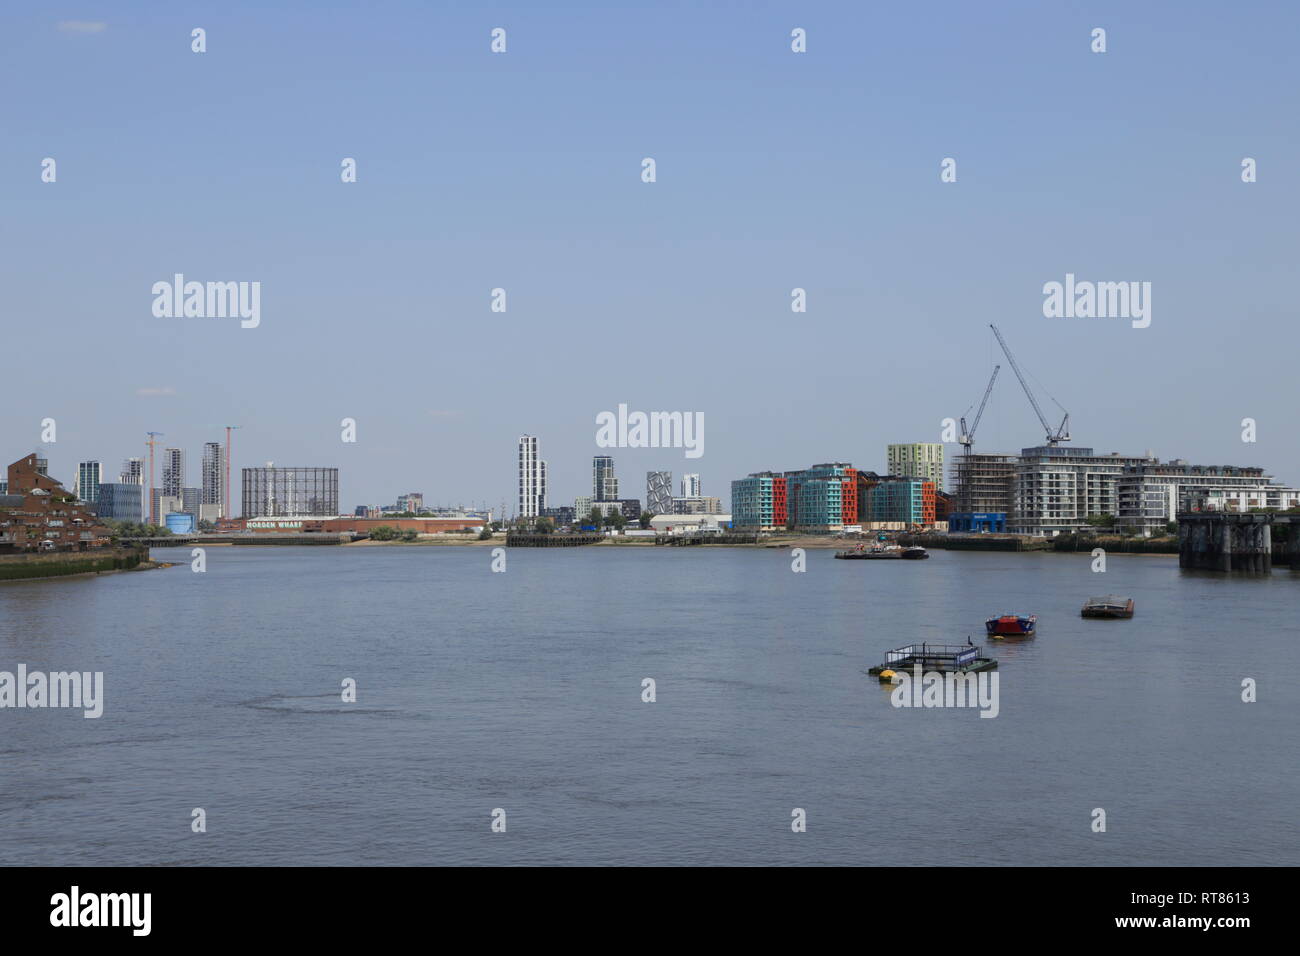 Les bâtiments, y compris l'optique Cape, créer un paysage urbain le long de la Tamise à Londres, vue de Greenwich, Royaume-Uni. Banque D'Images